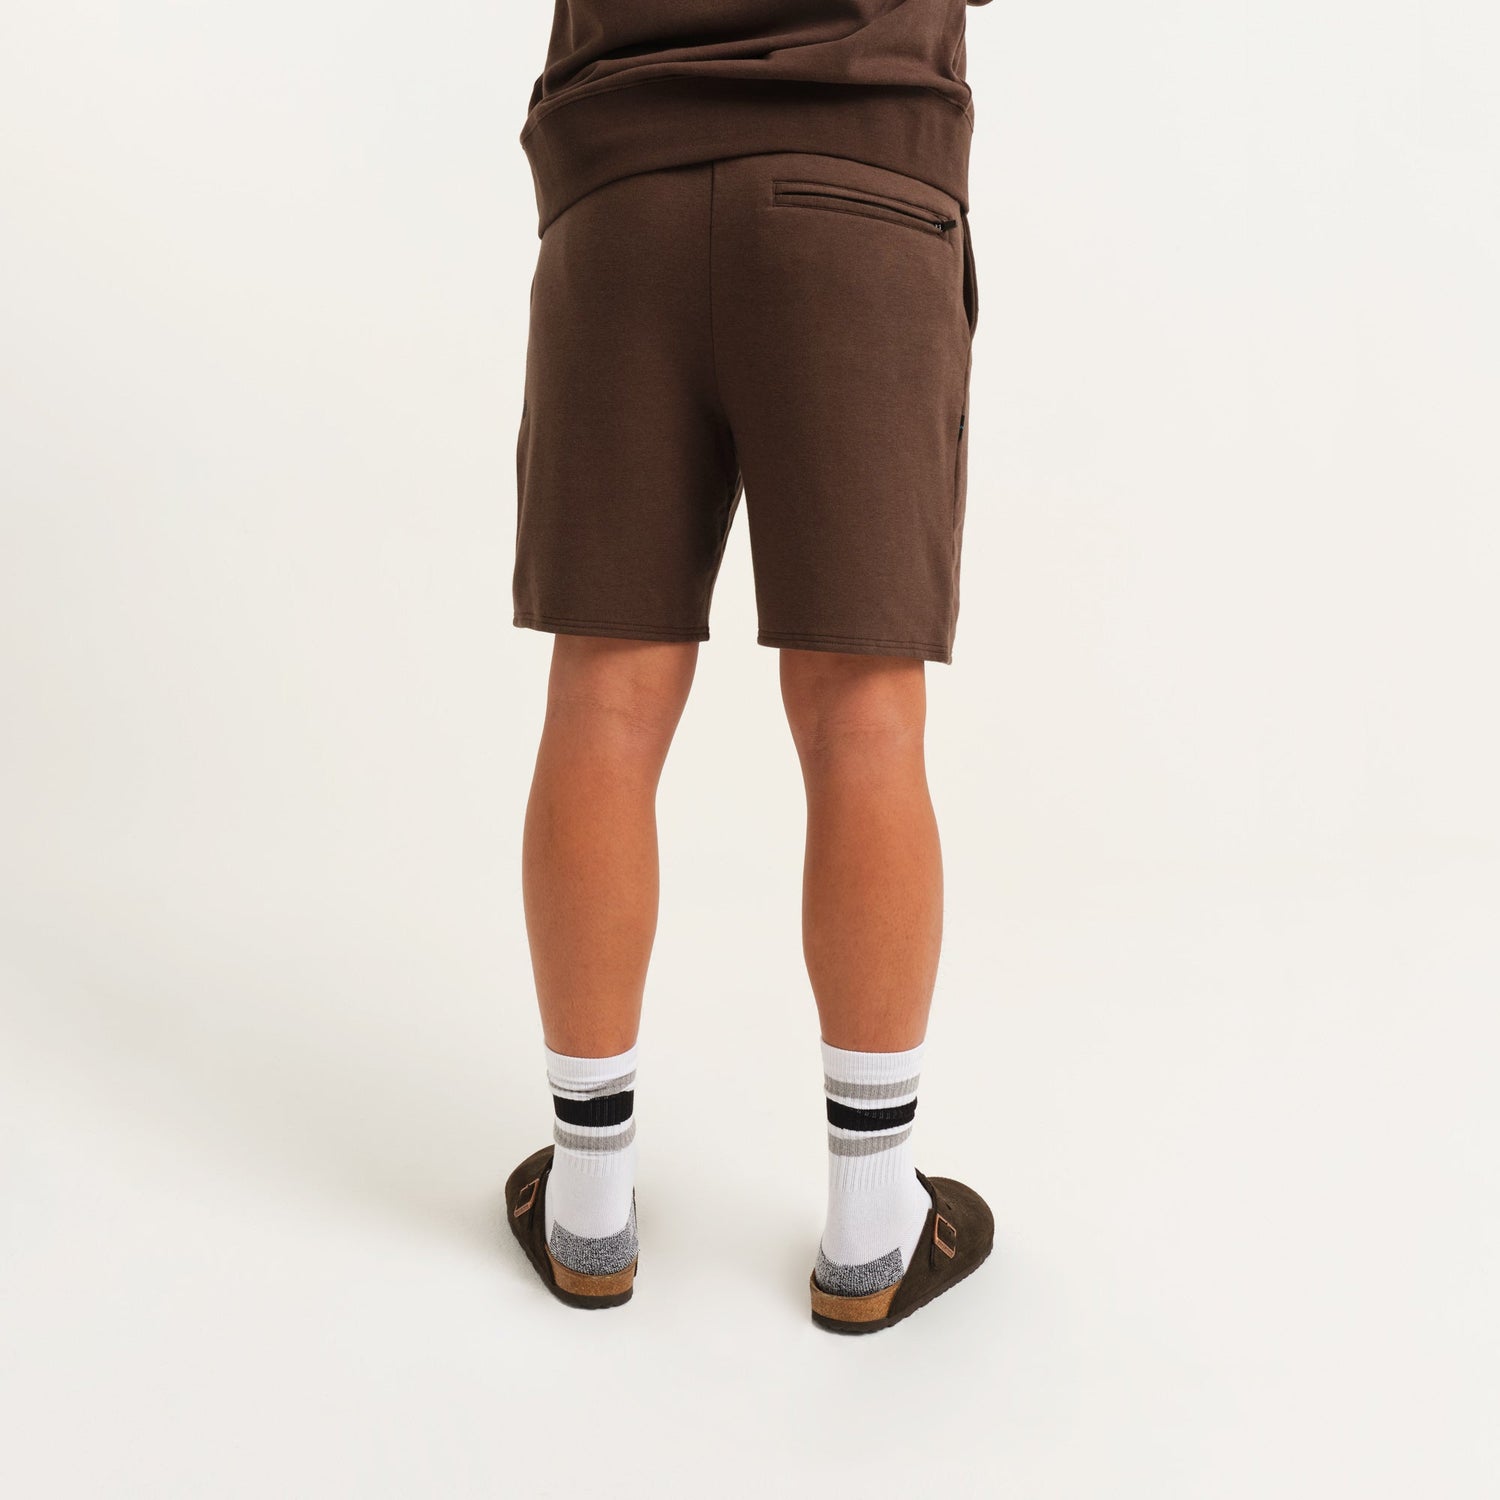 Stance Shelter Shorts Dunkelbraun |model